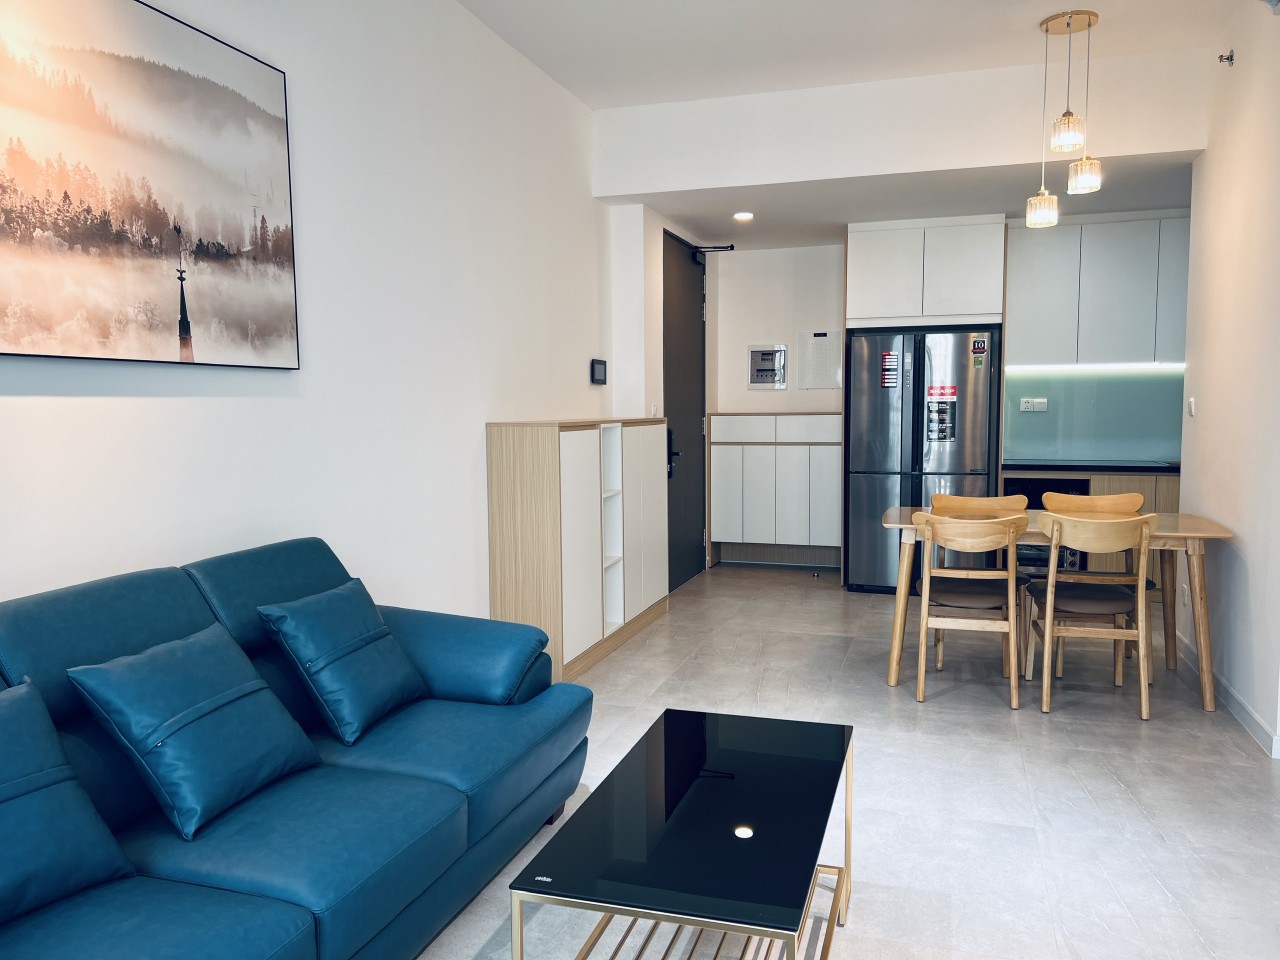 Cho thuê căn hộ Antonia PMH Q7 - 2PN nhà mới 100% giá 30tr